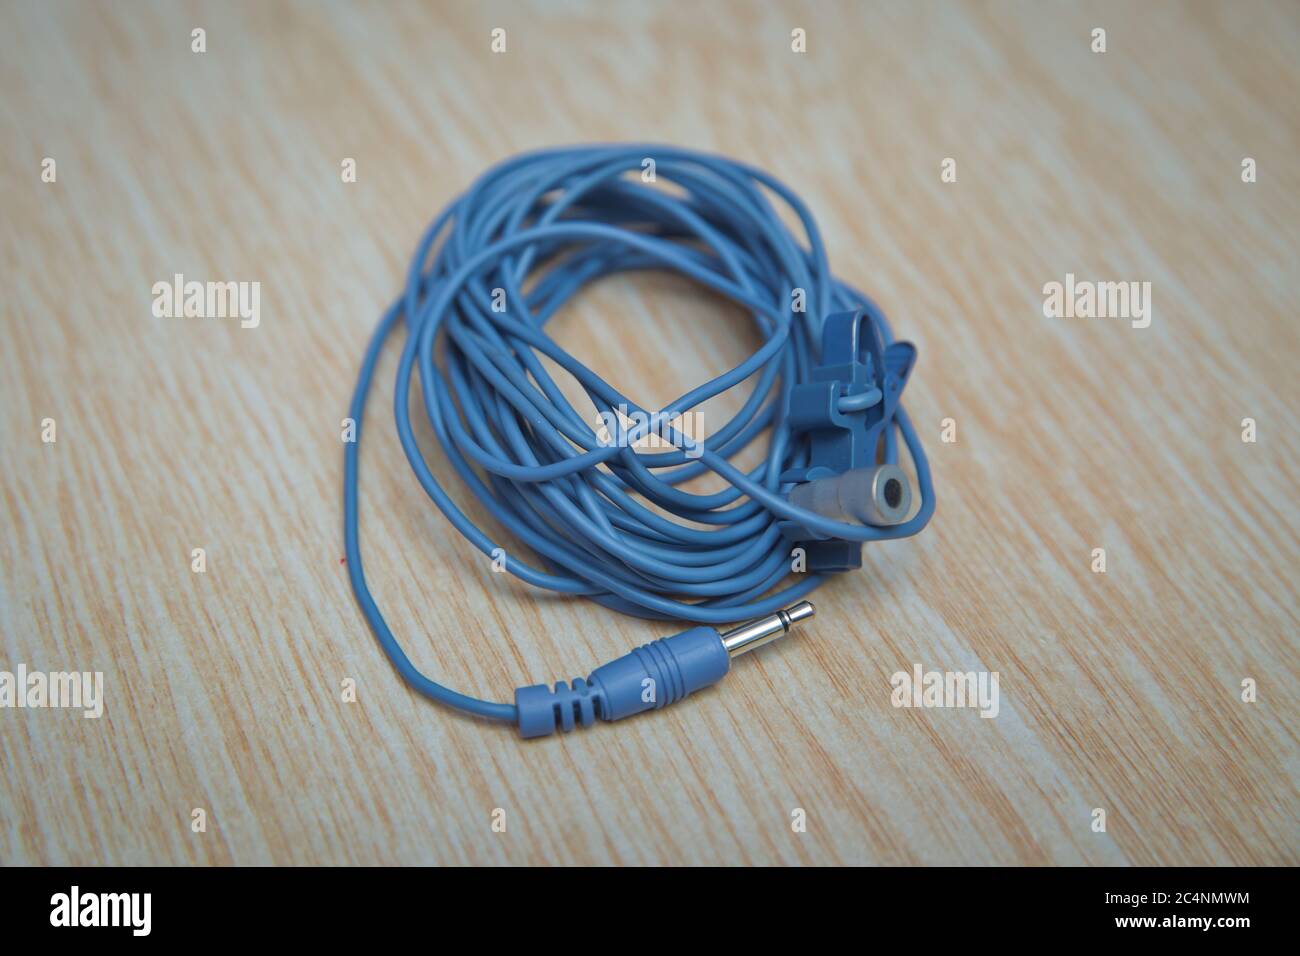 Câble de mini-jack audio pour microphone isolé sur fond en bois . Câble bleu de séparation pour microphone et casque . Banque D'Images